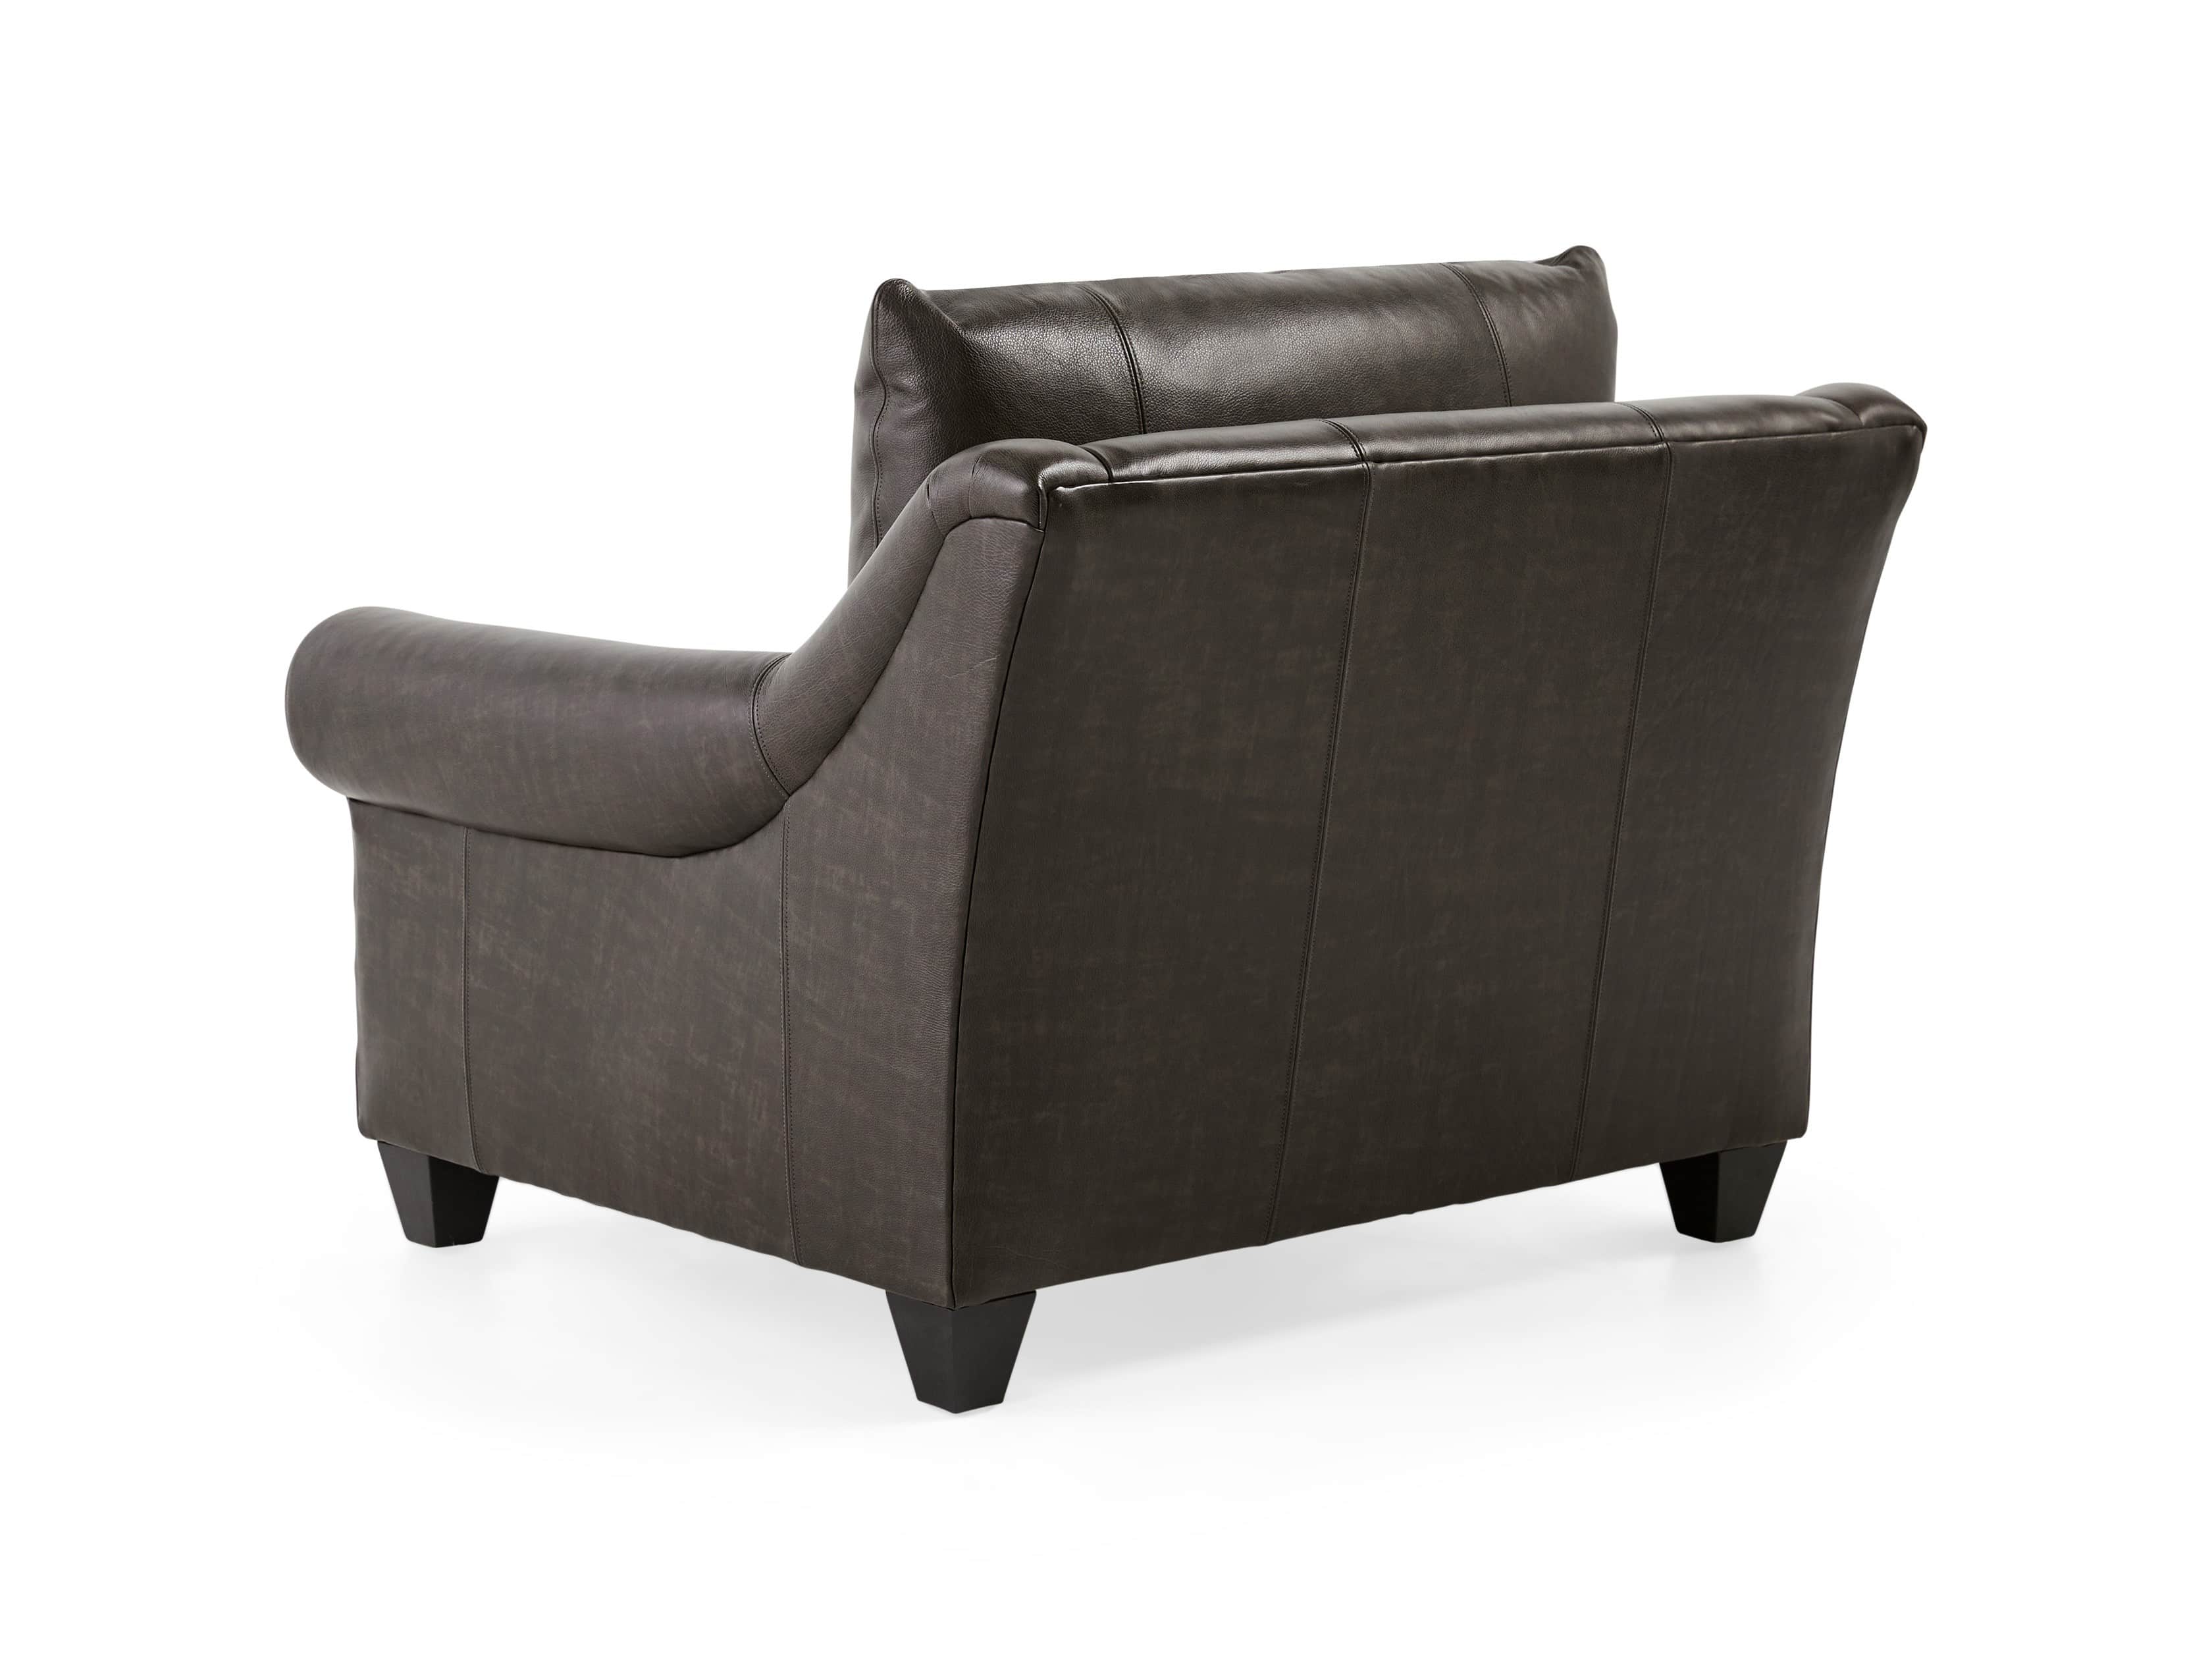 Rockway Leather Chair | Arhaus Furniture